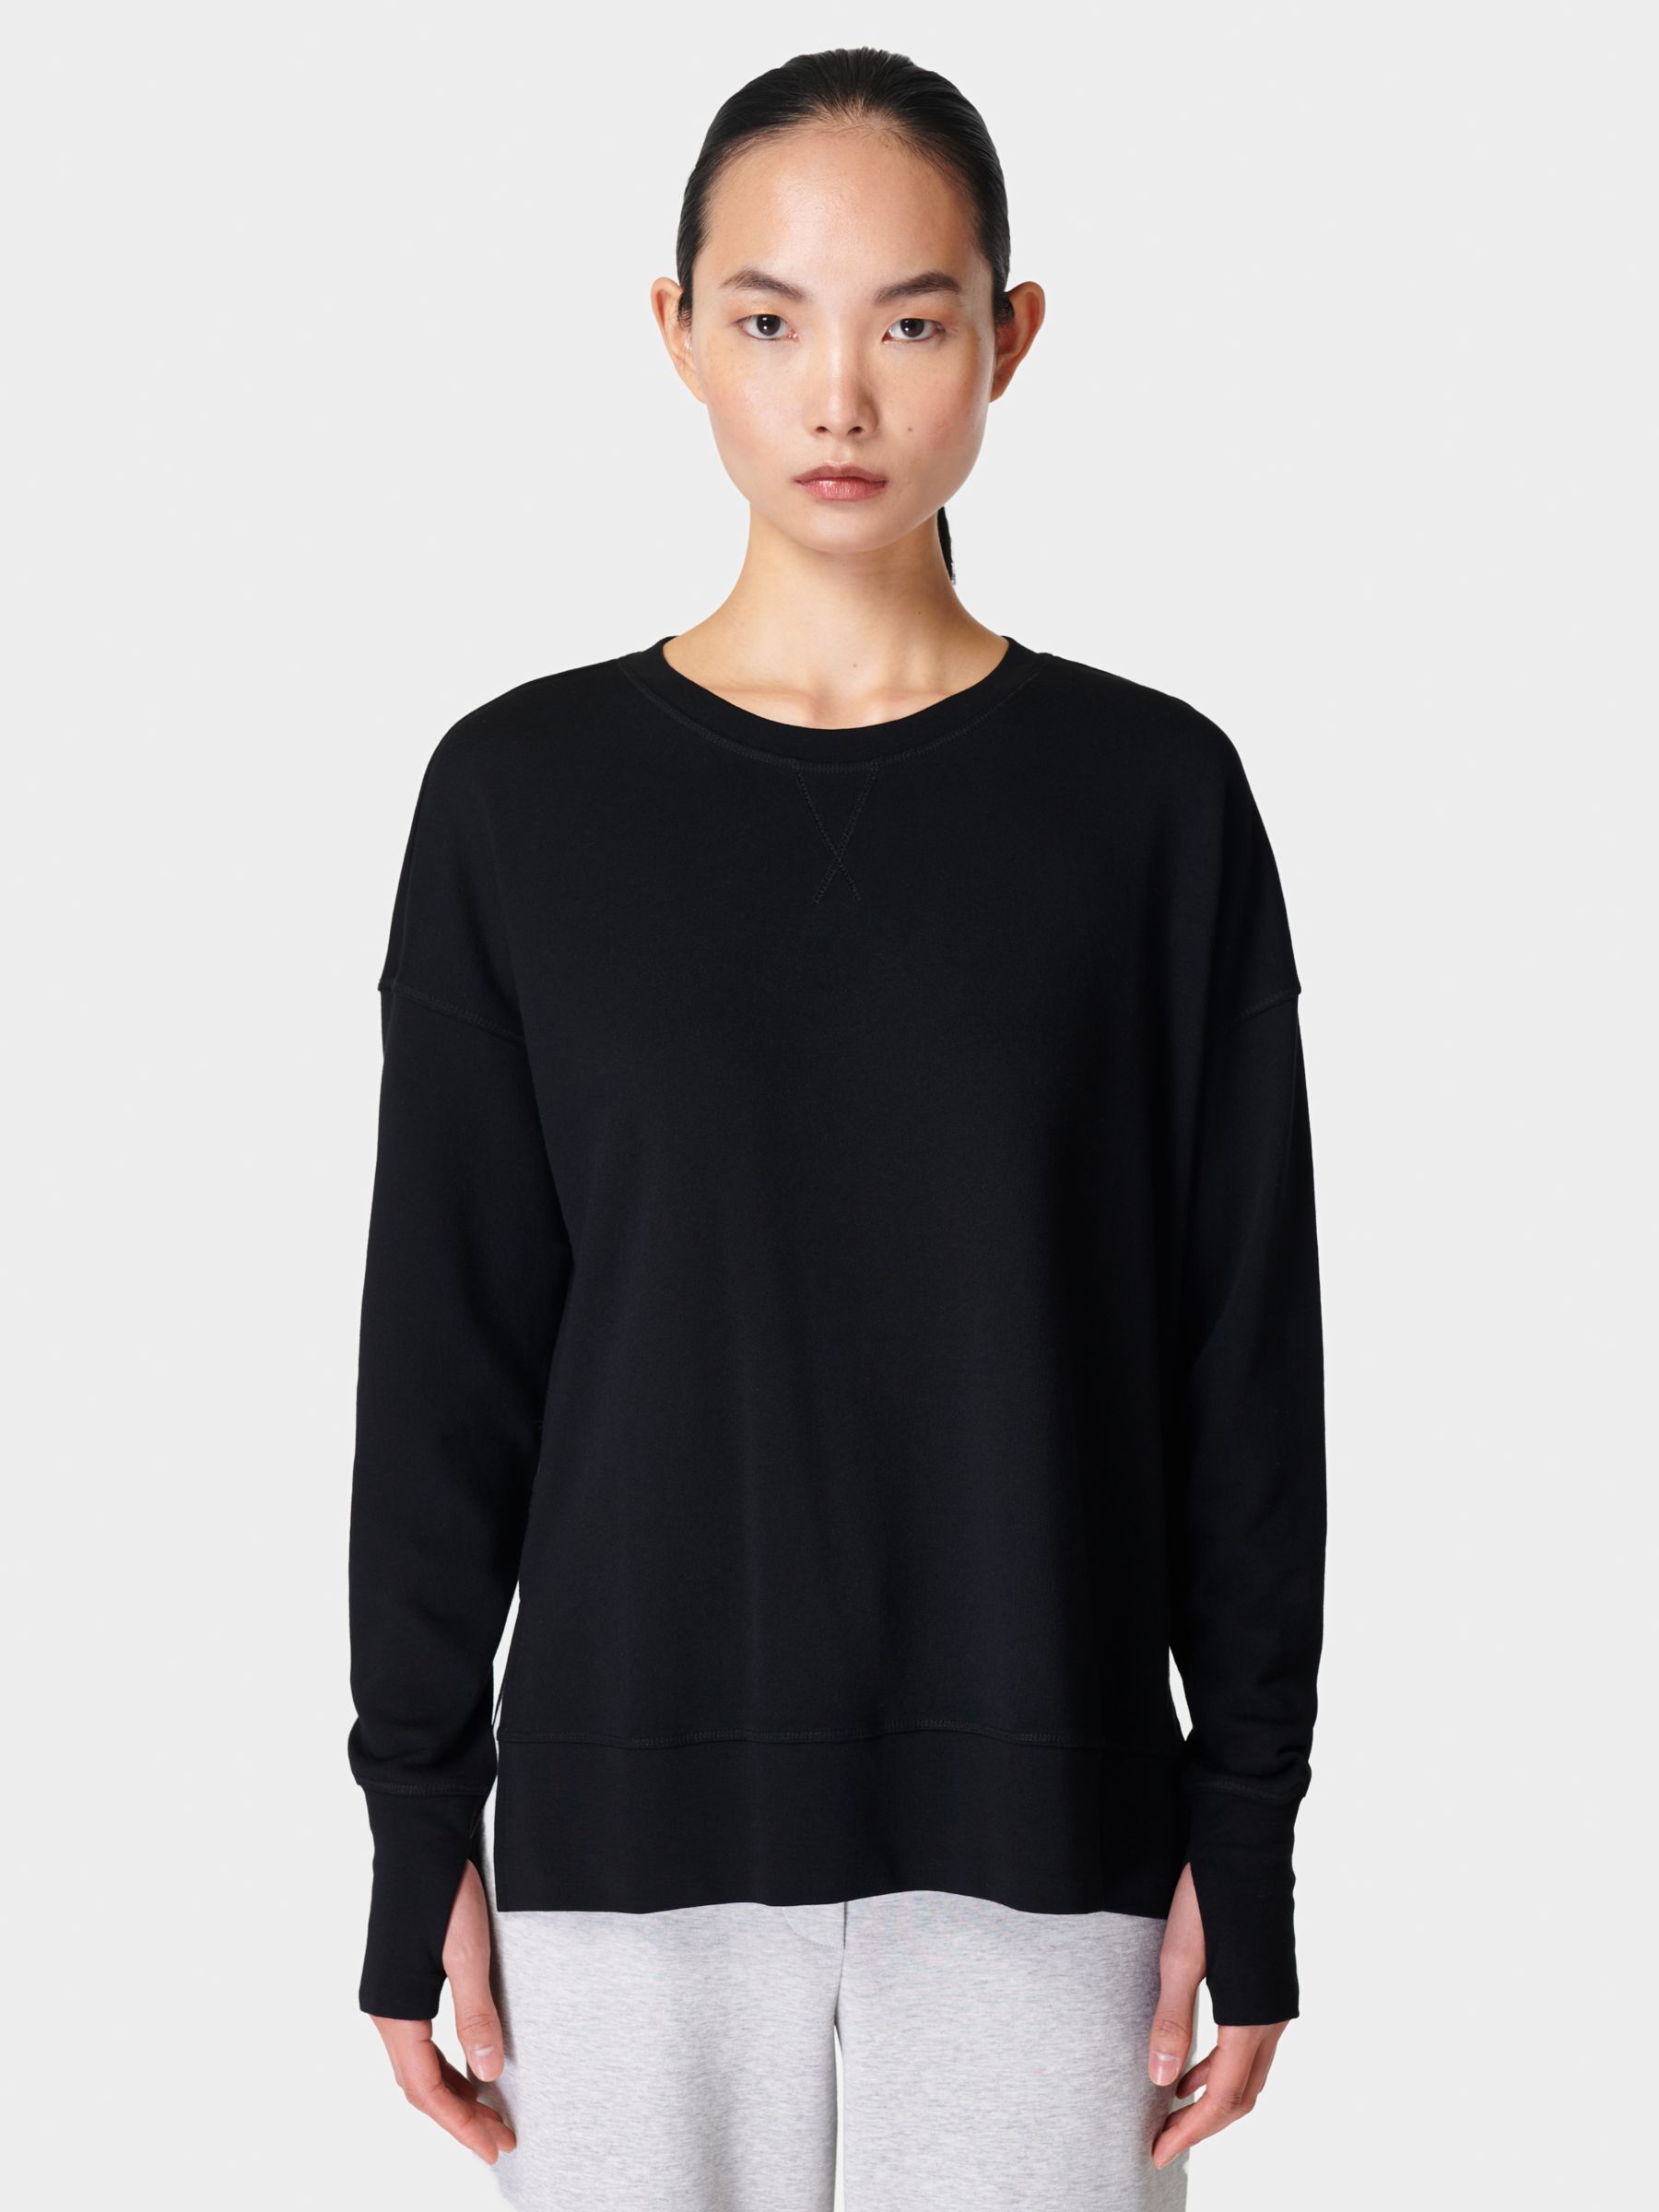 Women's Shirts & Tops - Round Neck, Sweatshirt